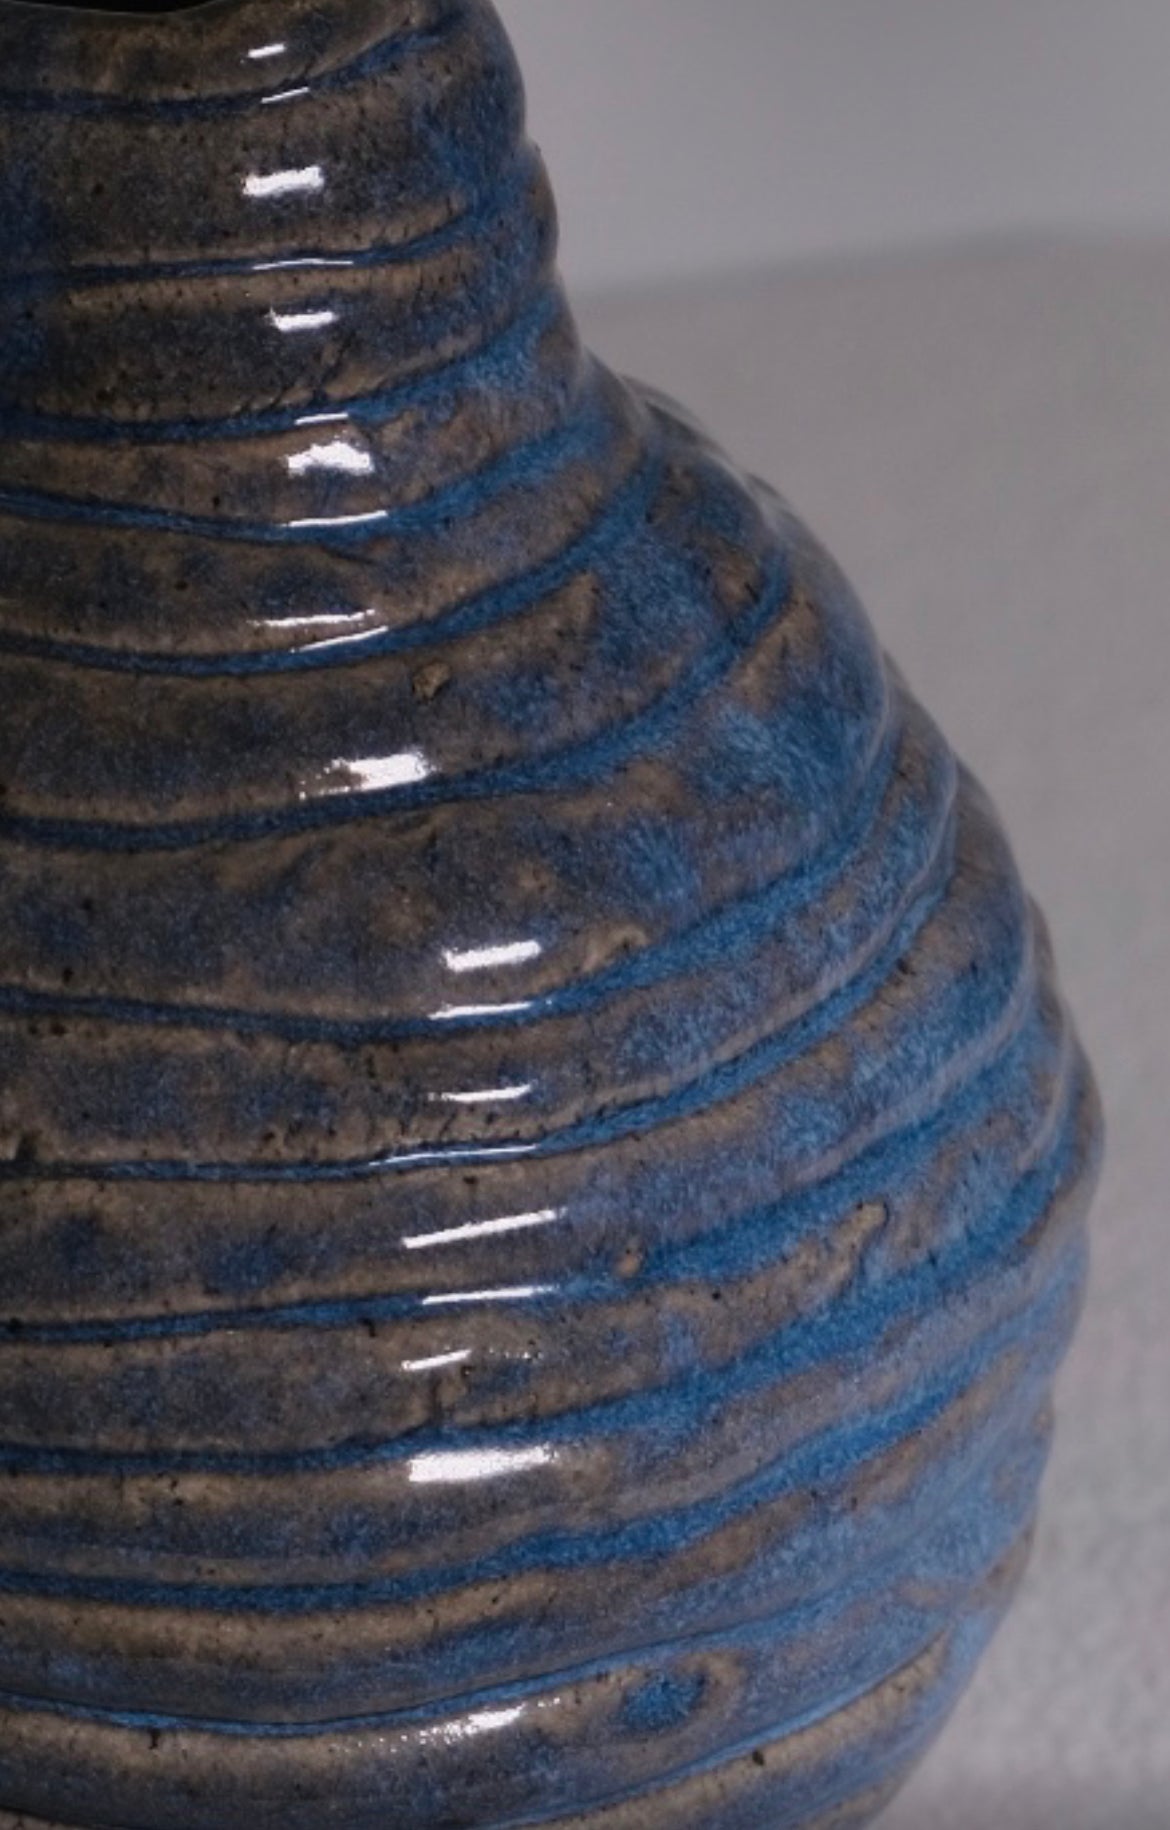 Blue Coil Bud Vase (Vintage)